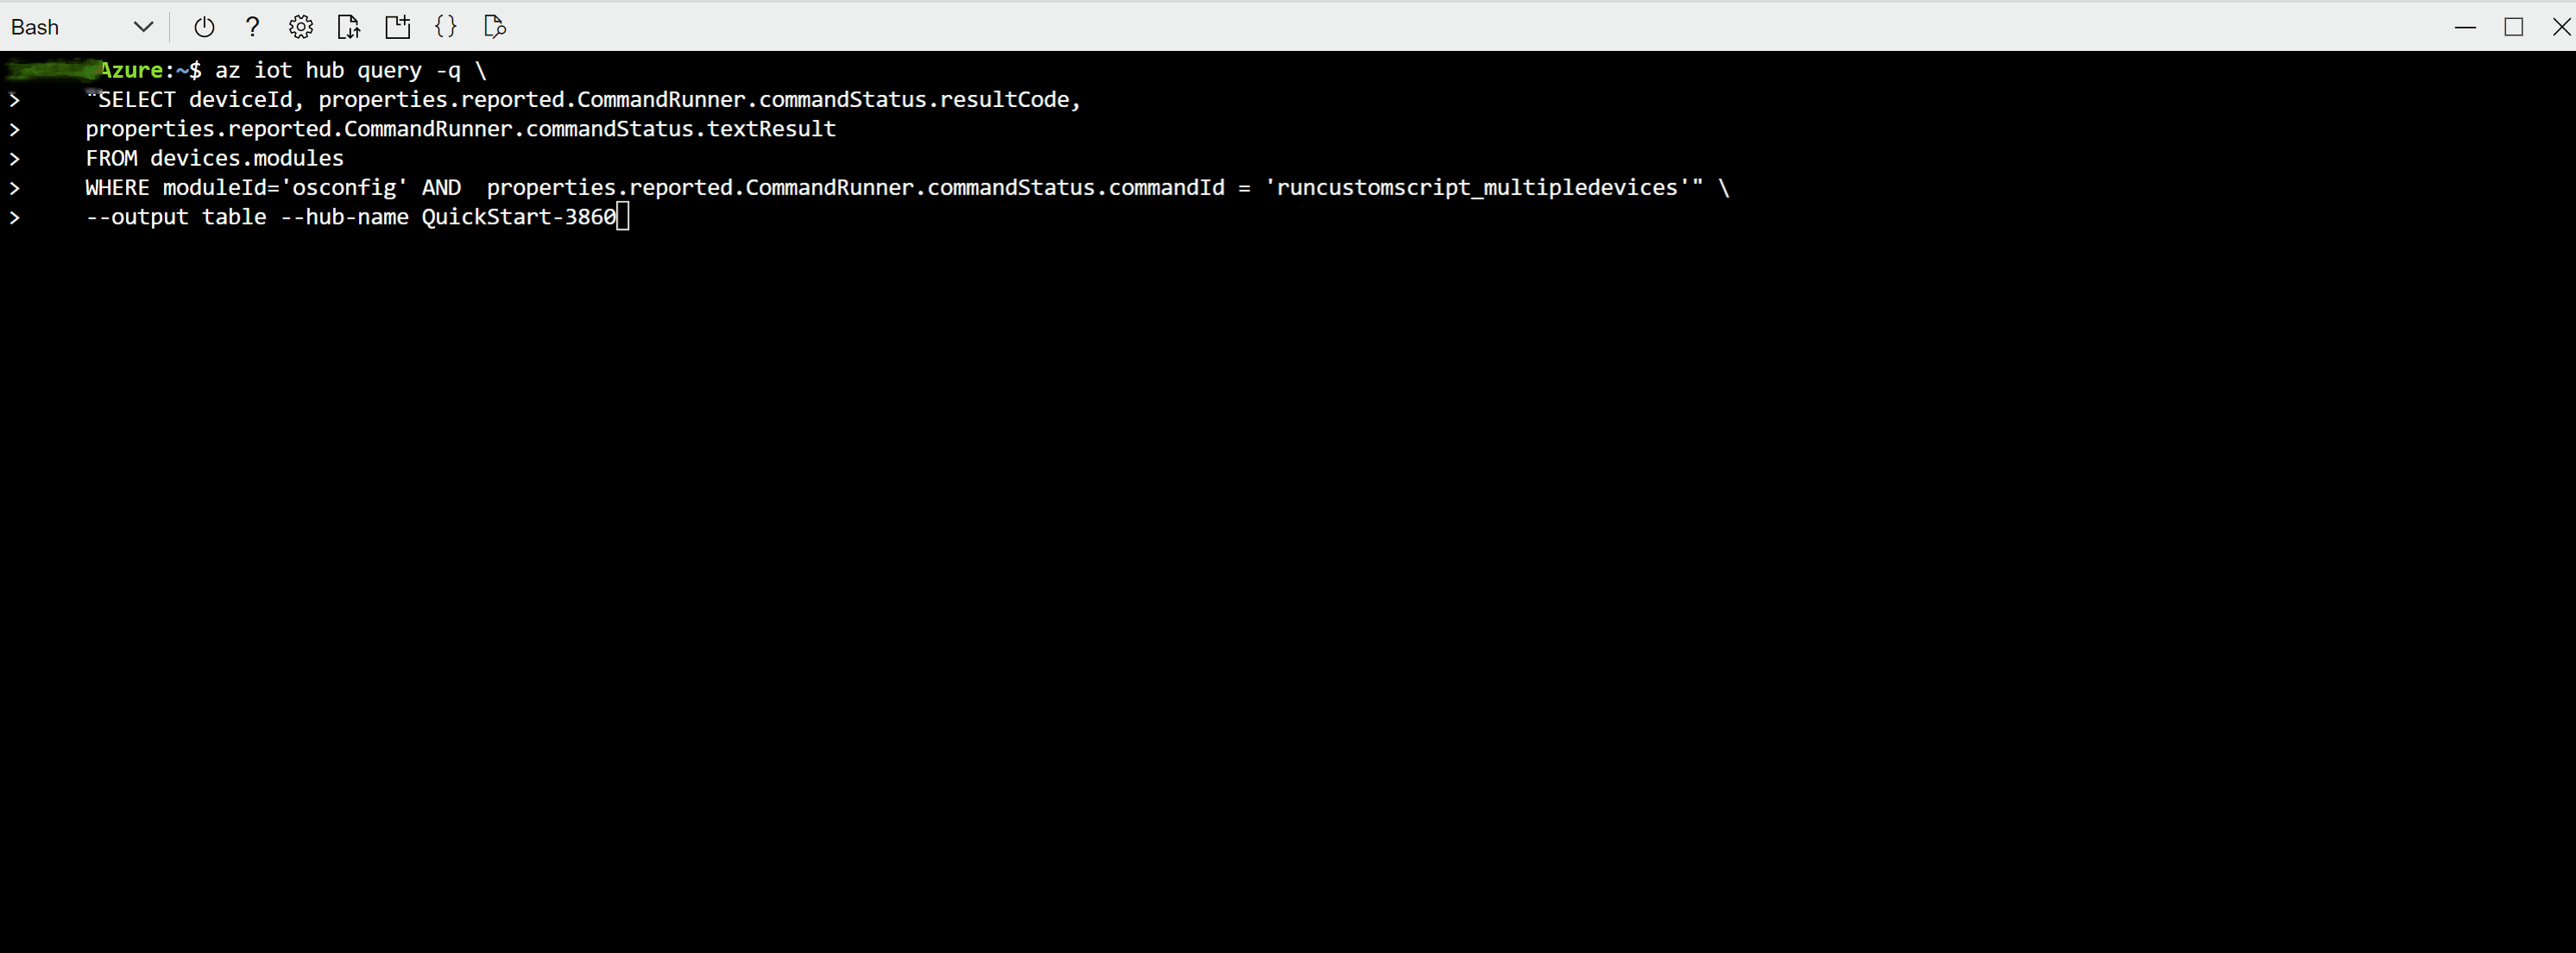 Captura de tela que mostra como verificar depois de executar um script personalizado em uma frota de dispositivos usando bash